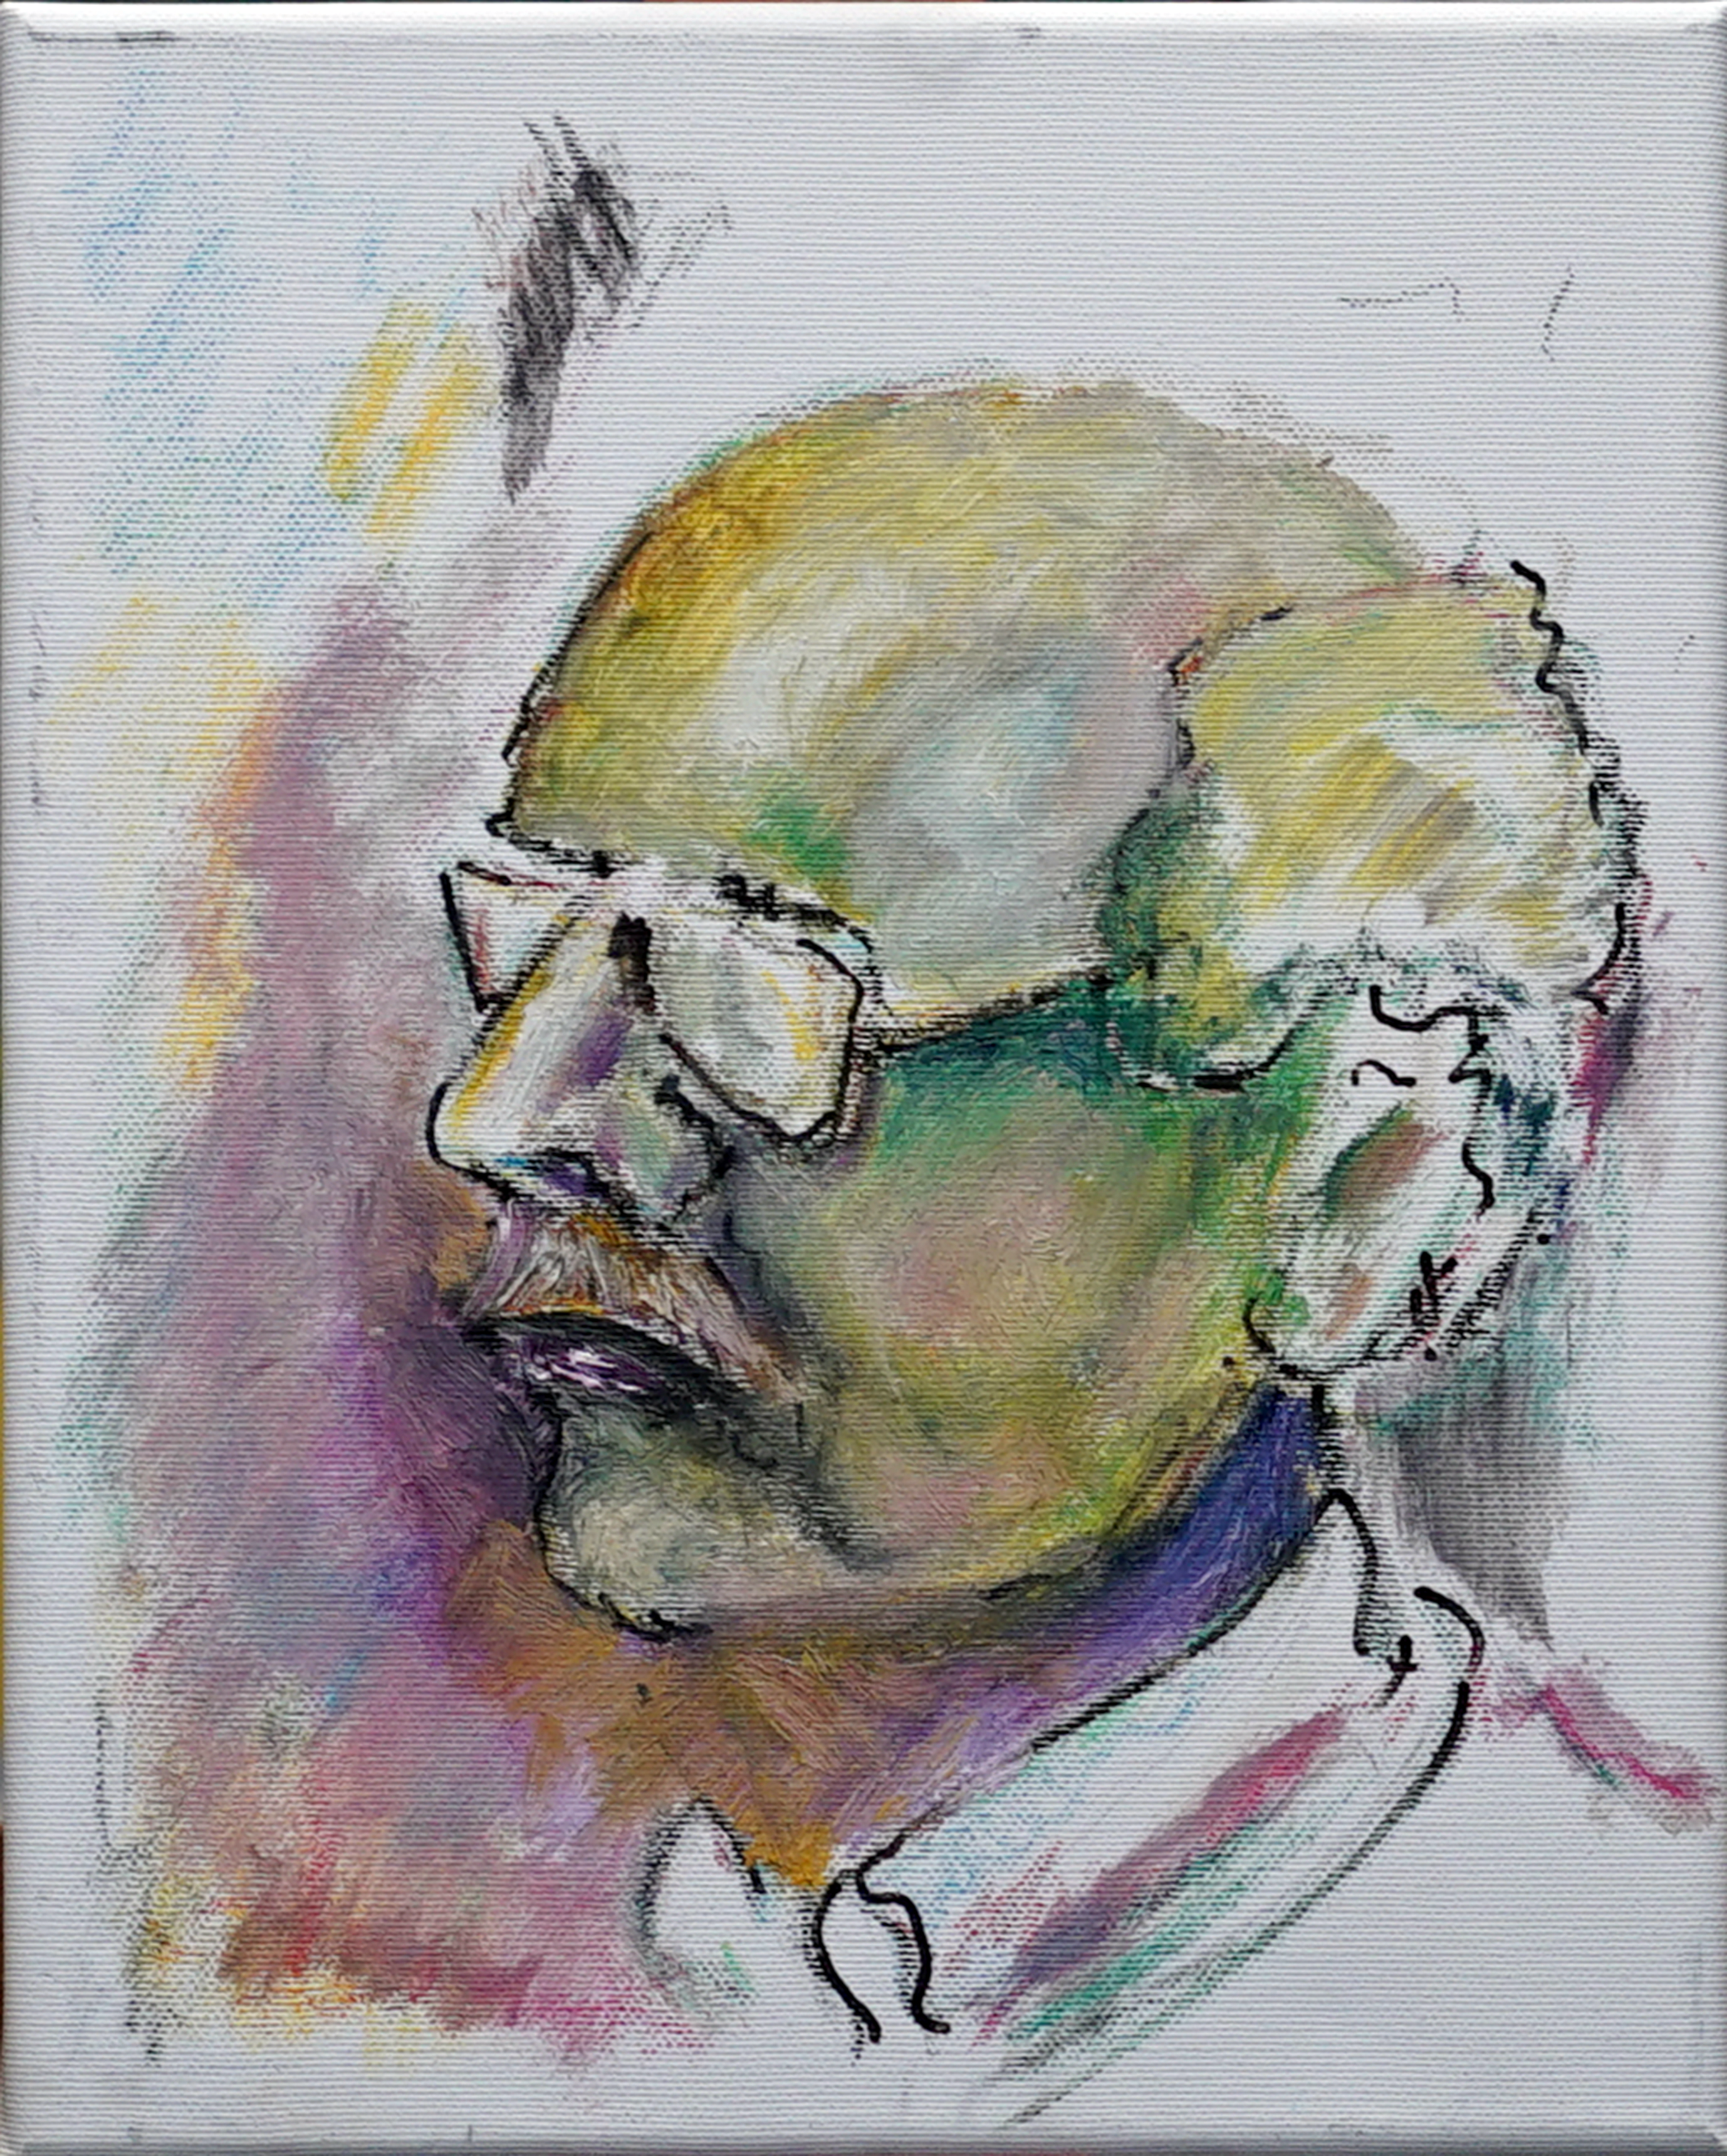 portrait 24x30 cm, oil on canvas